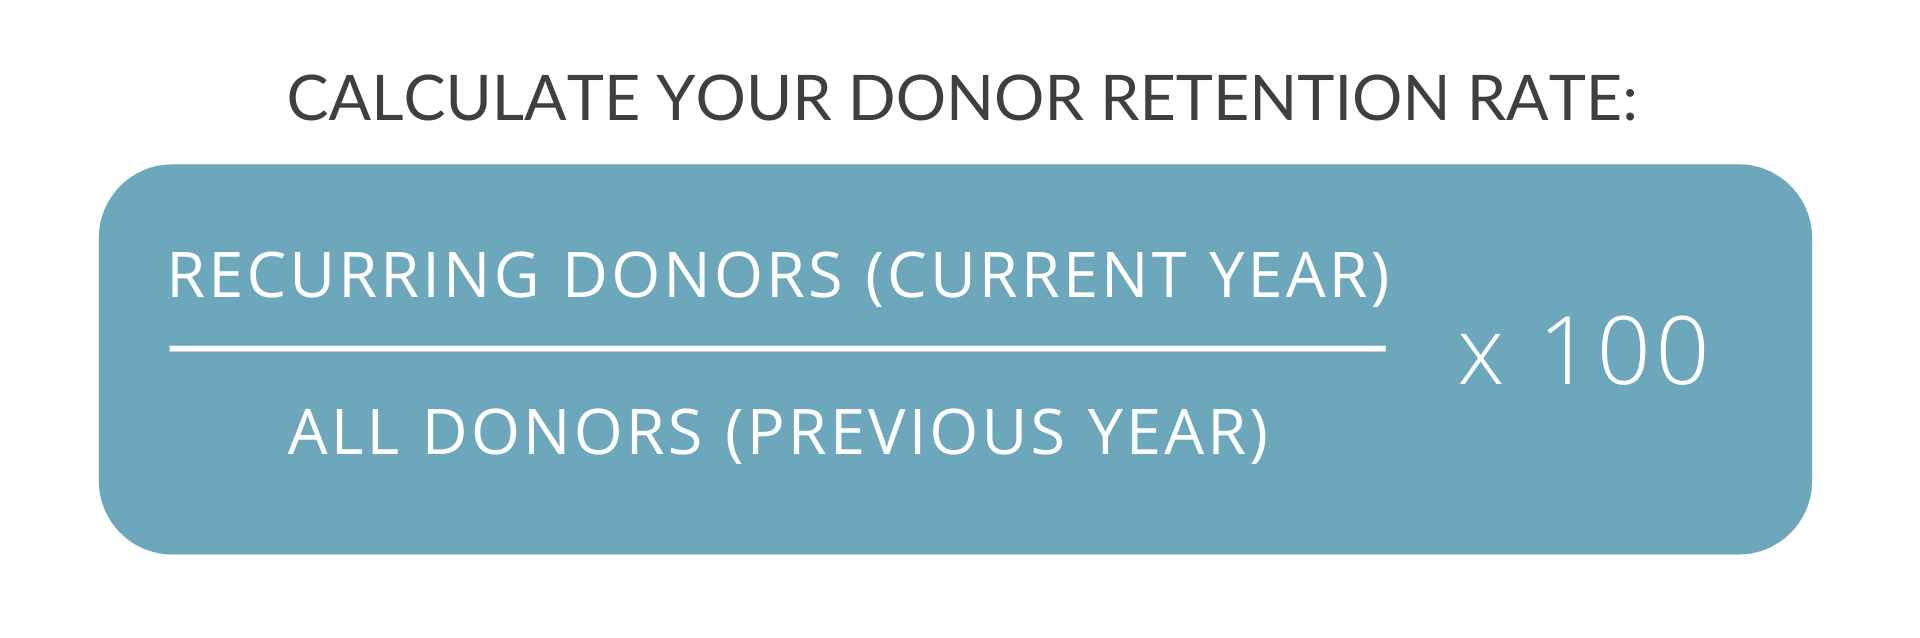 donor-retention-rate-e1585858758266